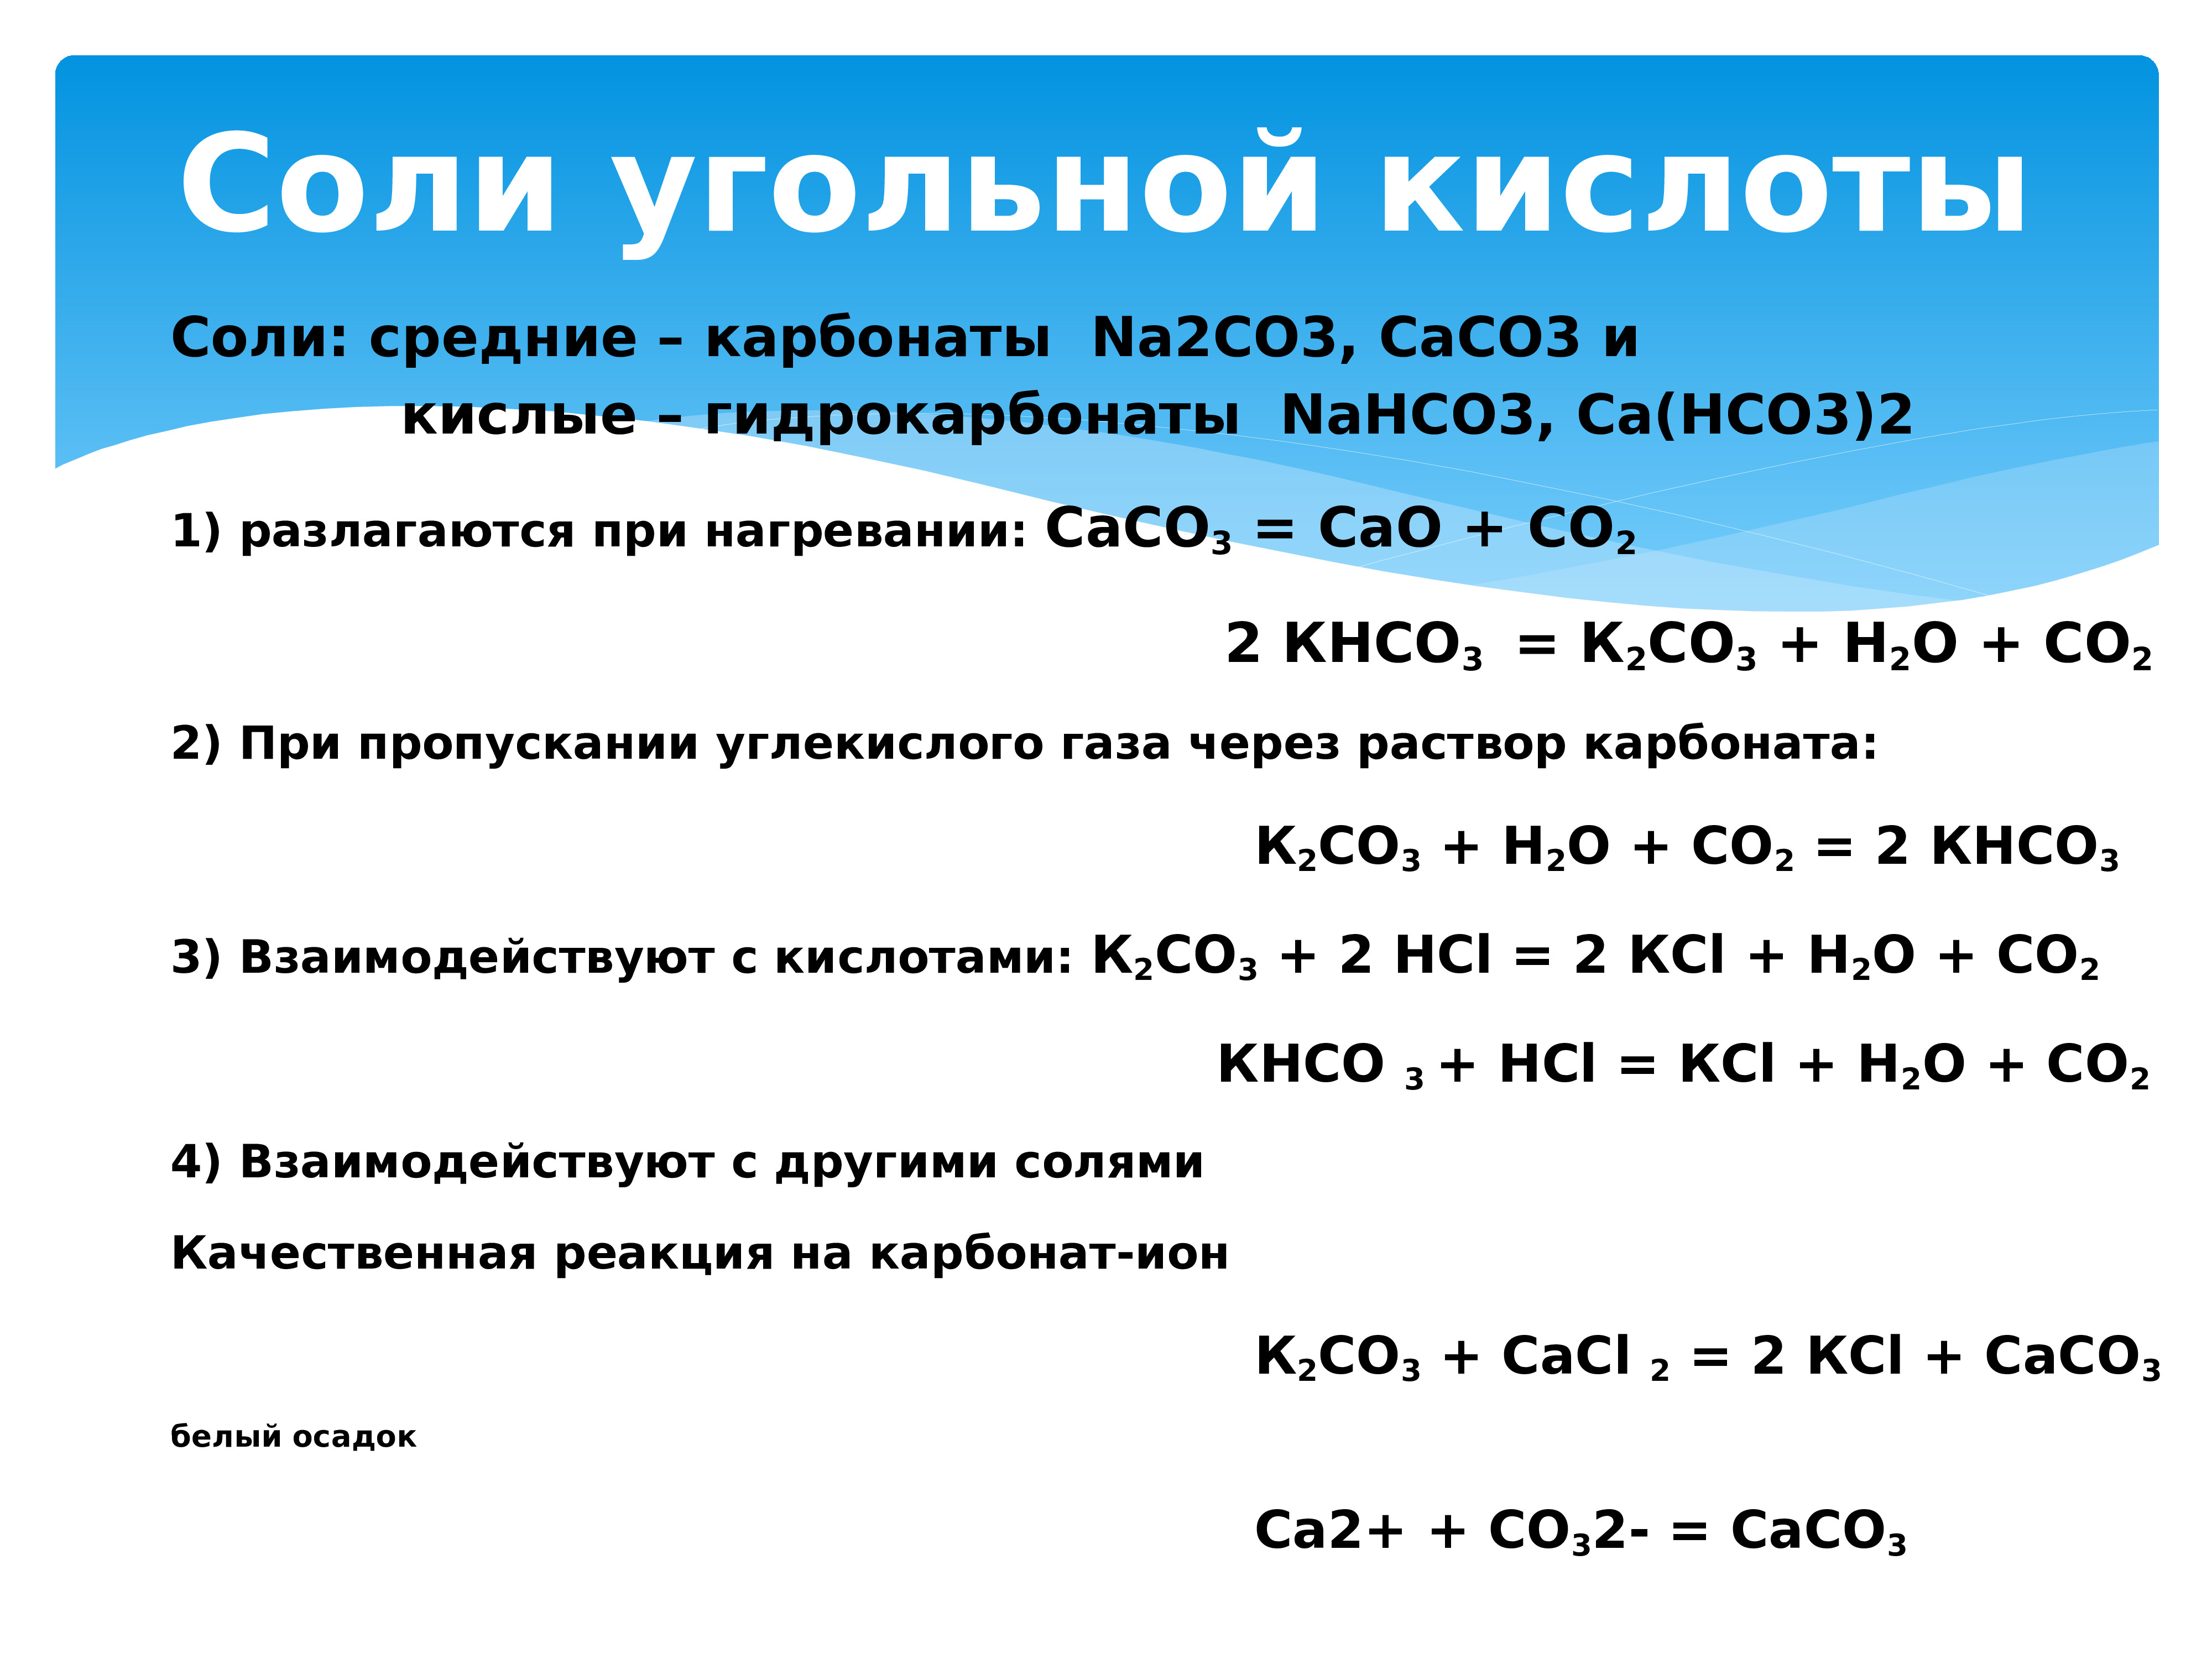 Качественная реакция углерода. Разложение карбонатов и гидрокарбонатов при нагревании. Реакции с углекислым газом. Соли угольной кислоты. Разложение углерода.